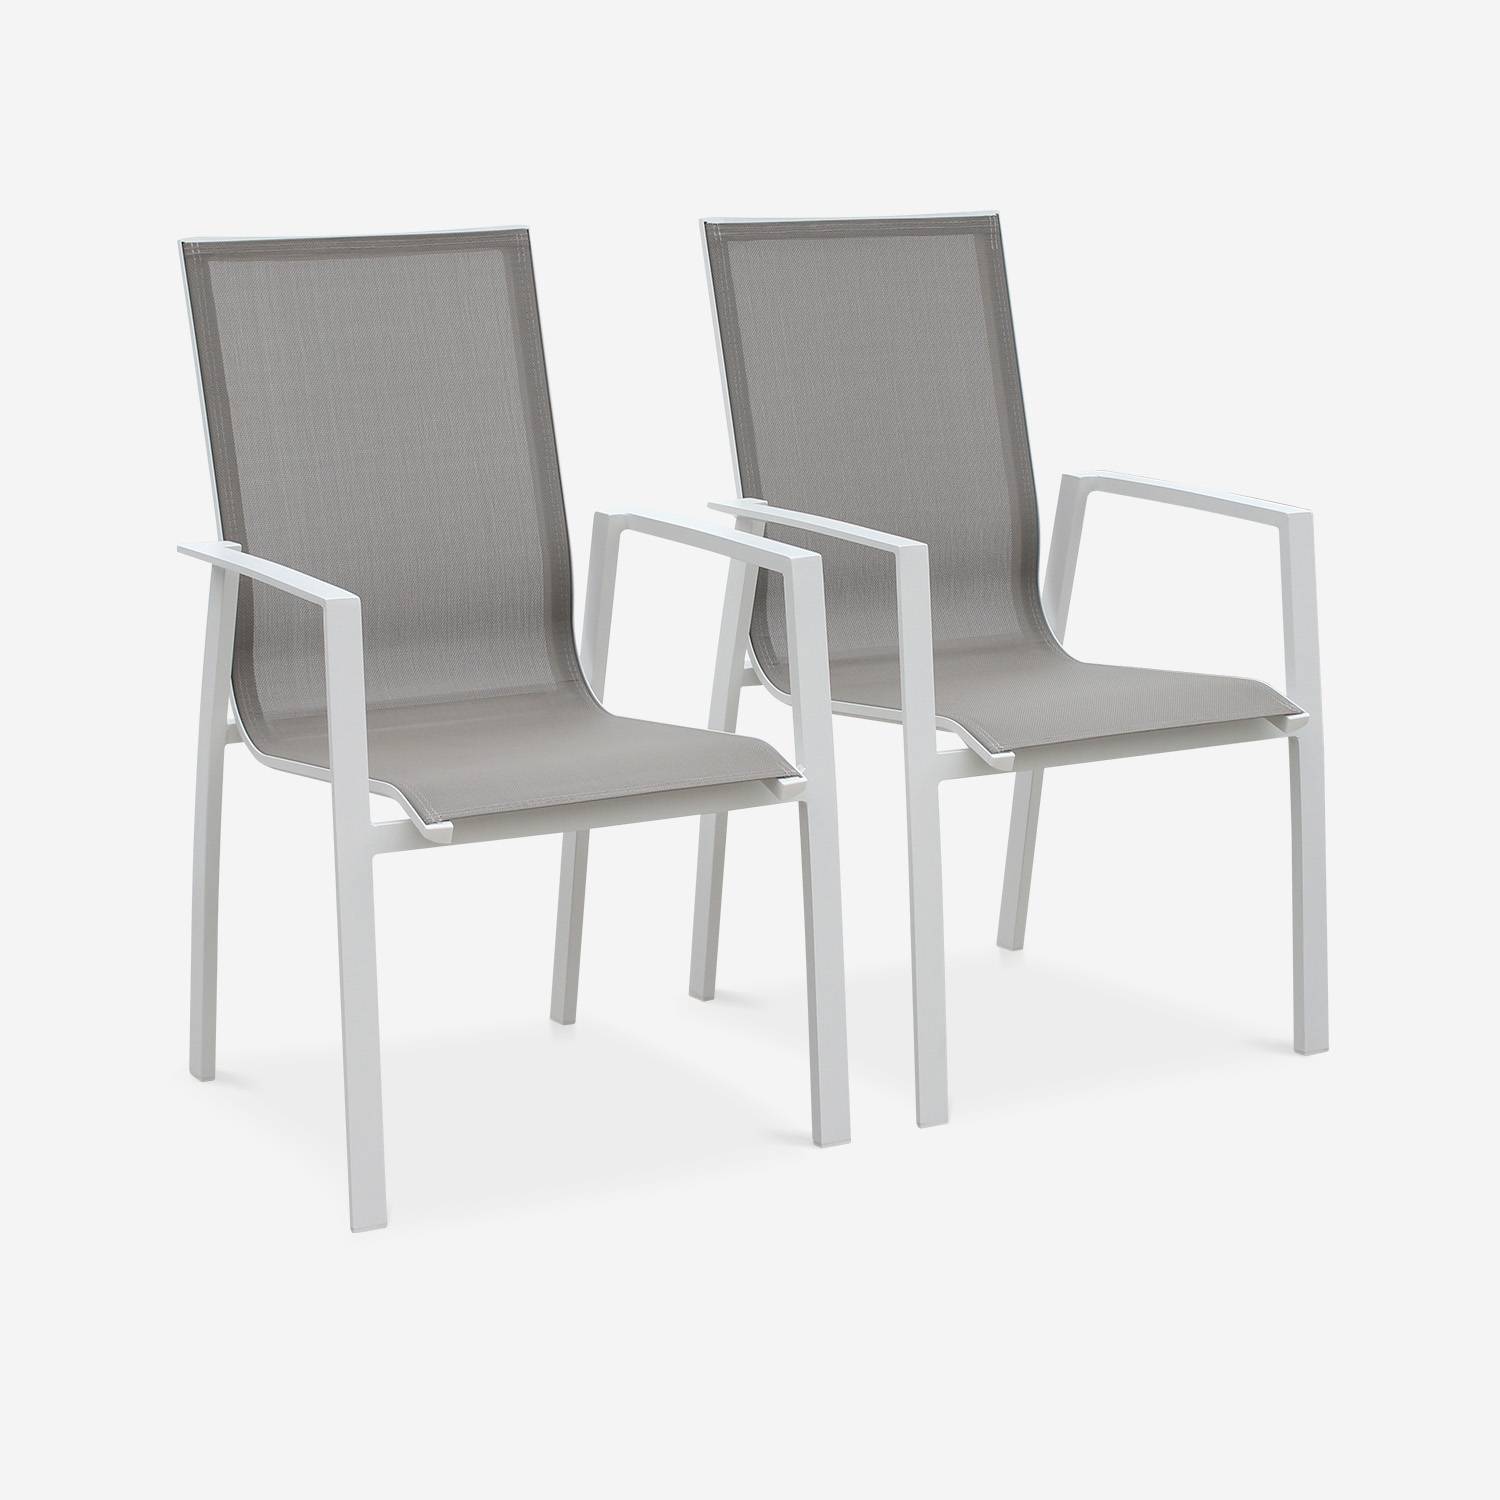 Juego de 2 sillas - Washington - Aluminio blanco y textileno pardo, apilables Photo1